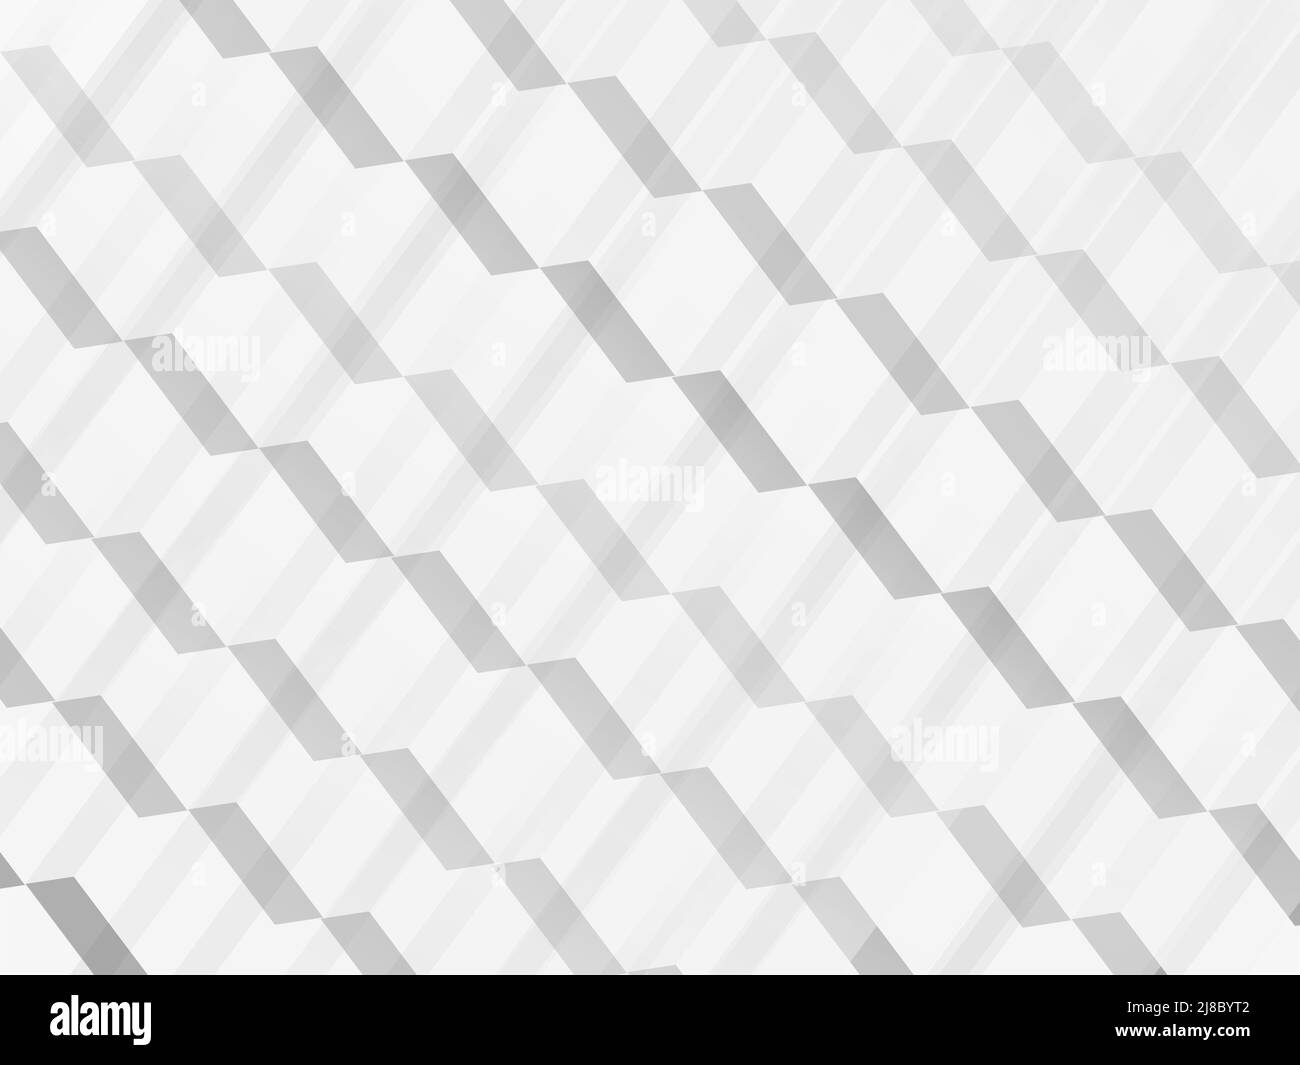 White and light gray hexagon pattern on white. - stock photo Stock Photo